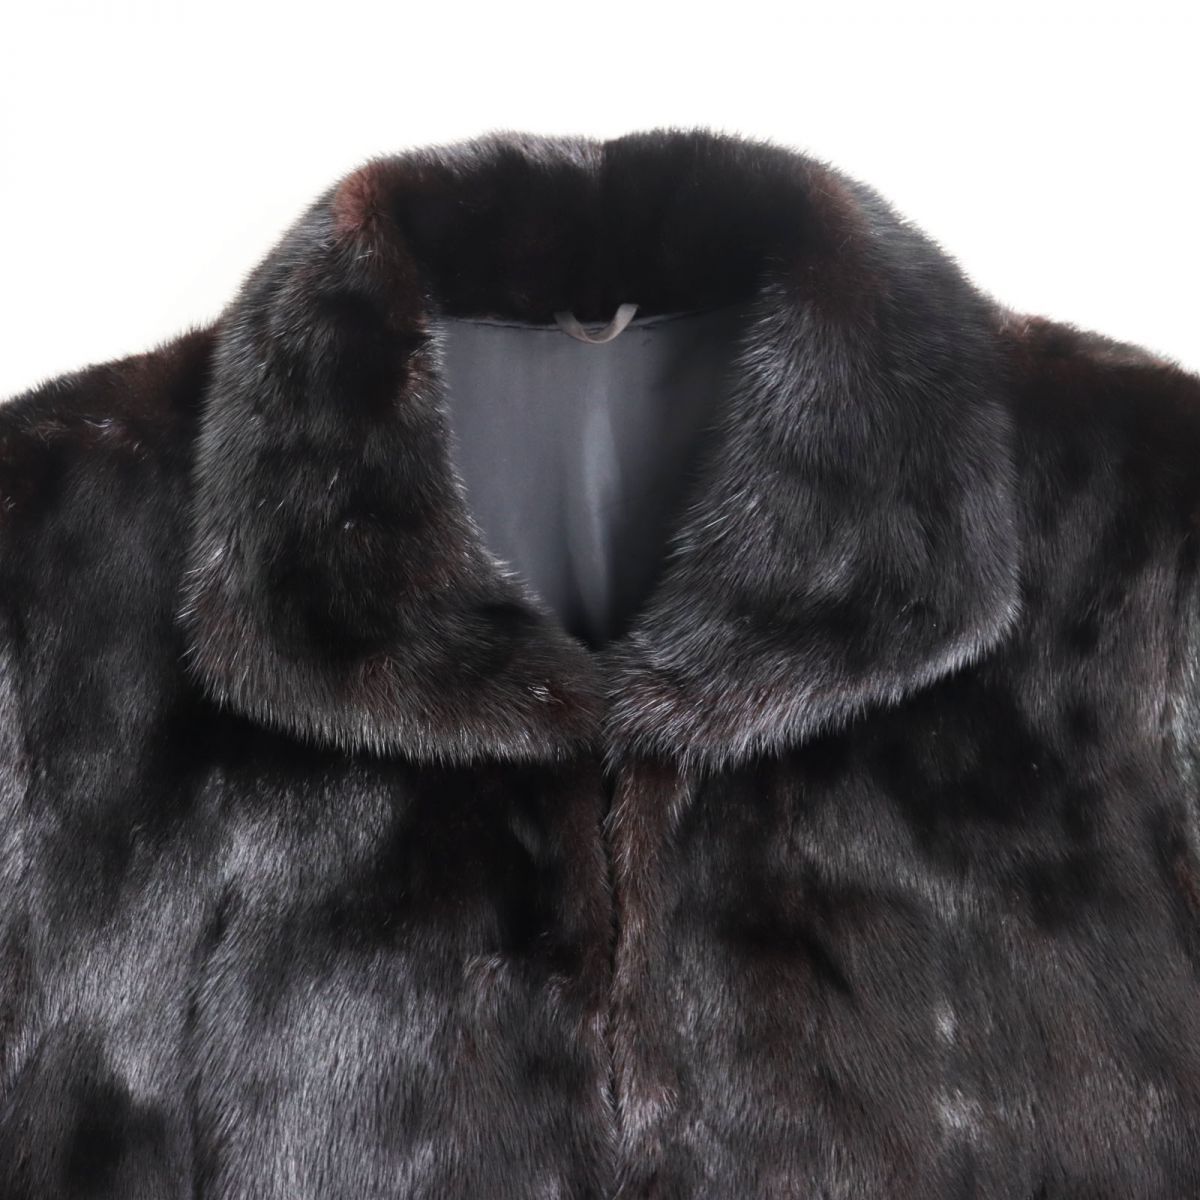 極美品▲MINK ミンク 本毛皮ショートコート ジャケット ブラック 毛質艶やか・柔らか◎ g102-st30302-86